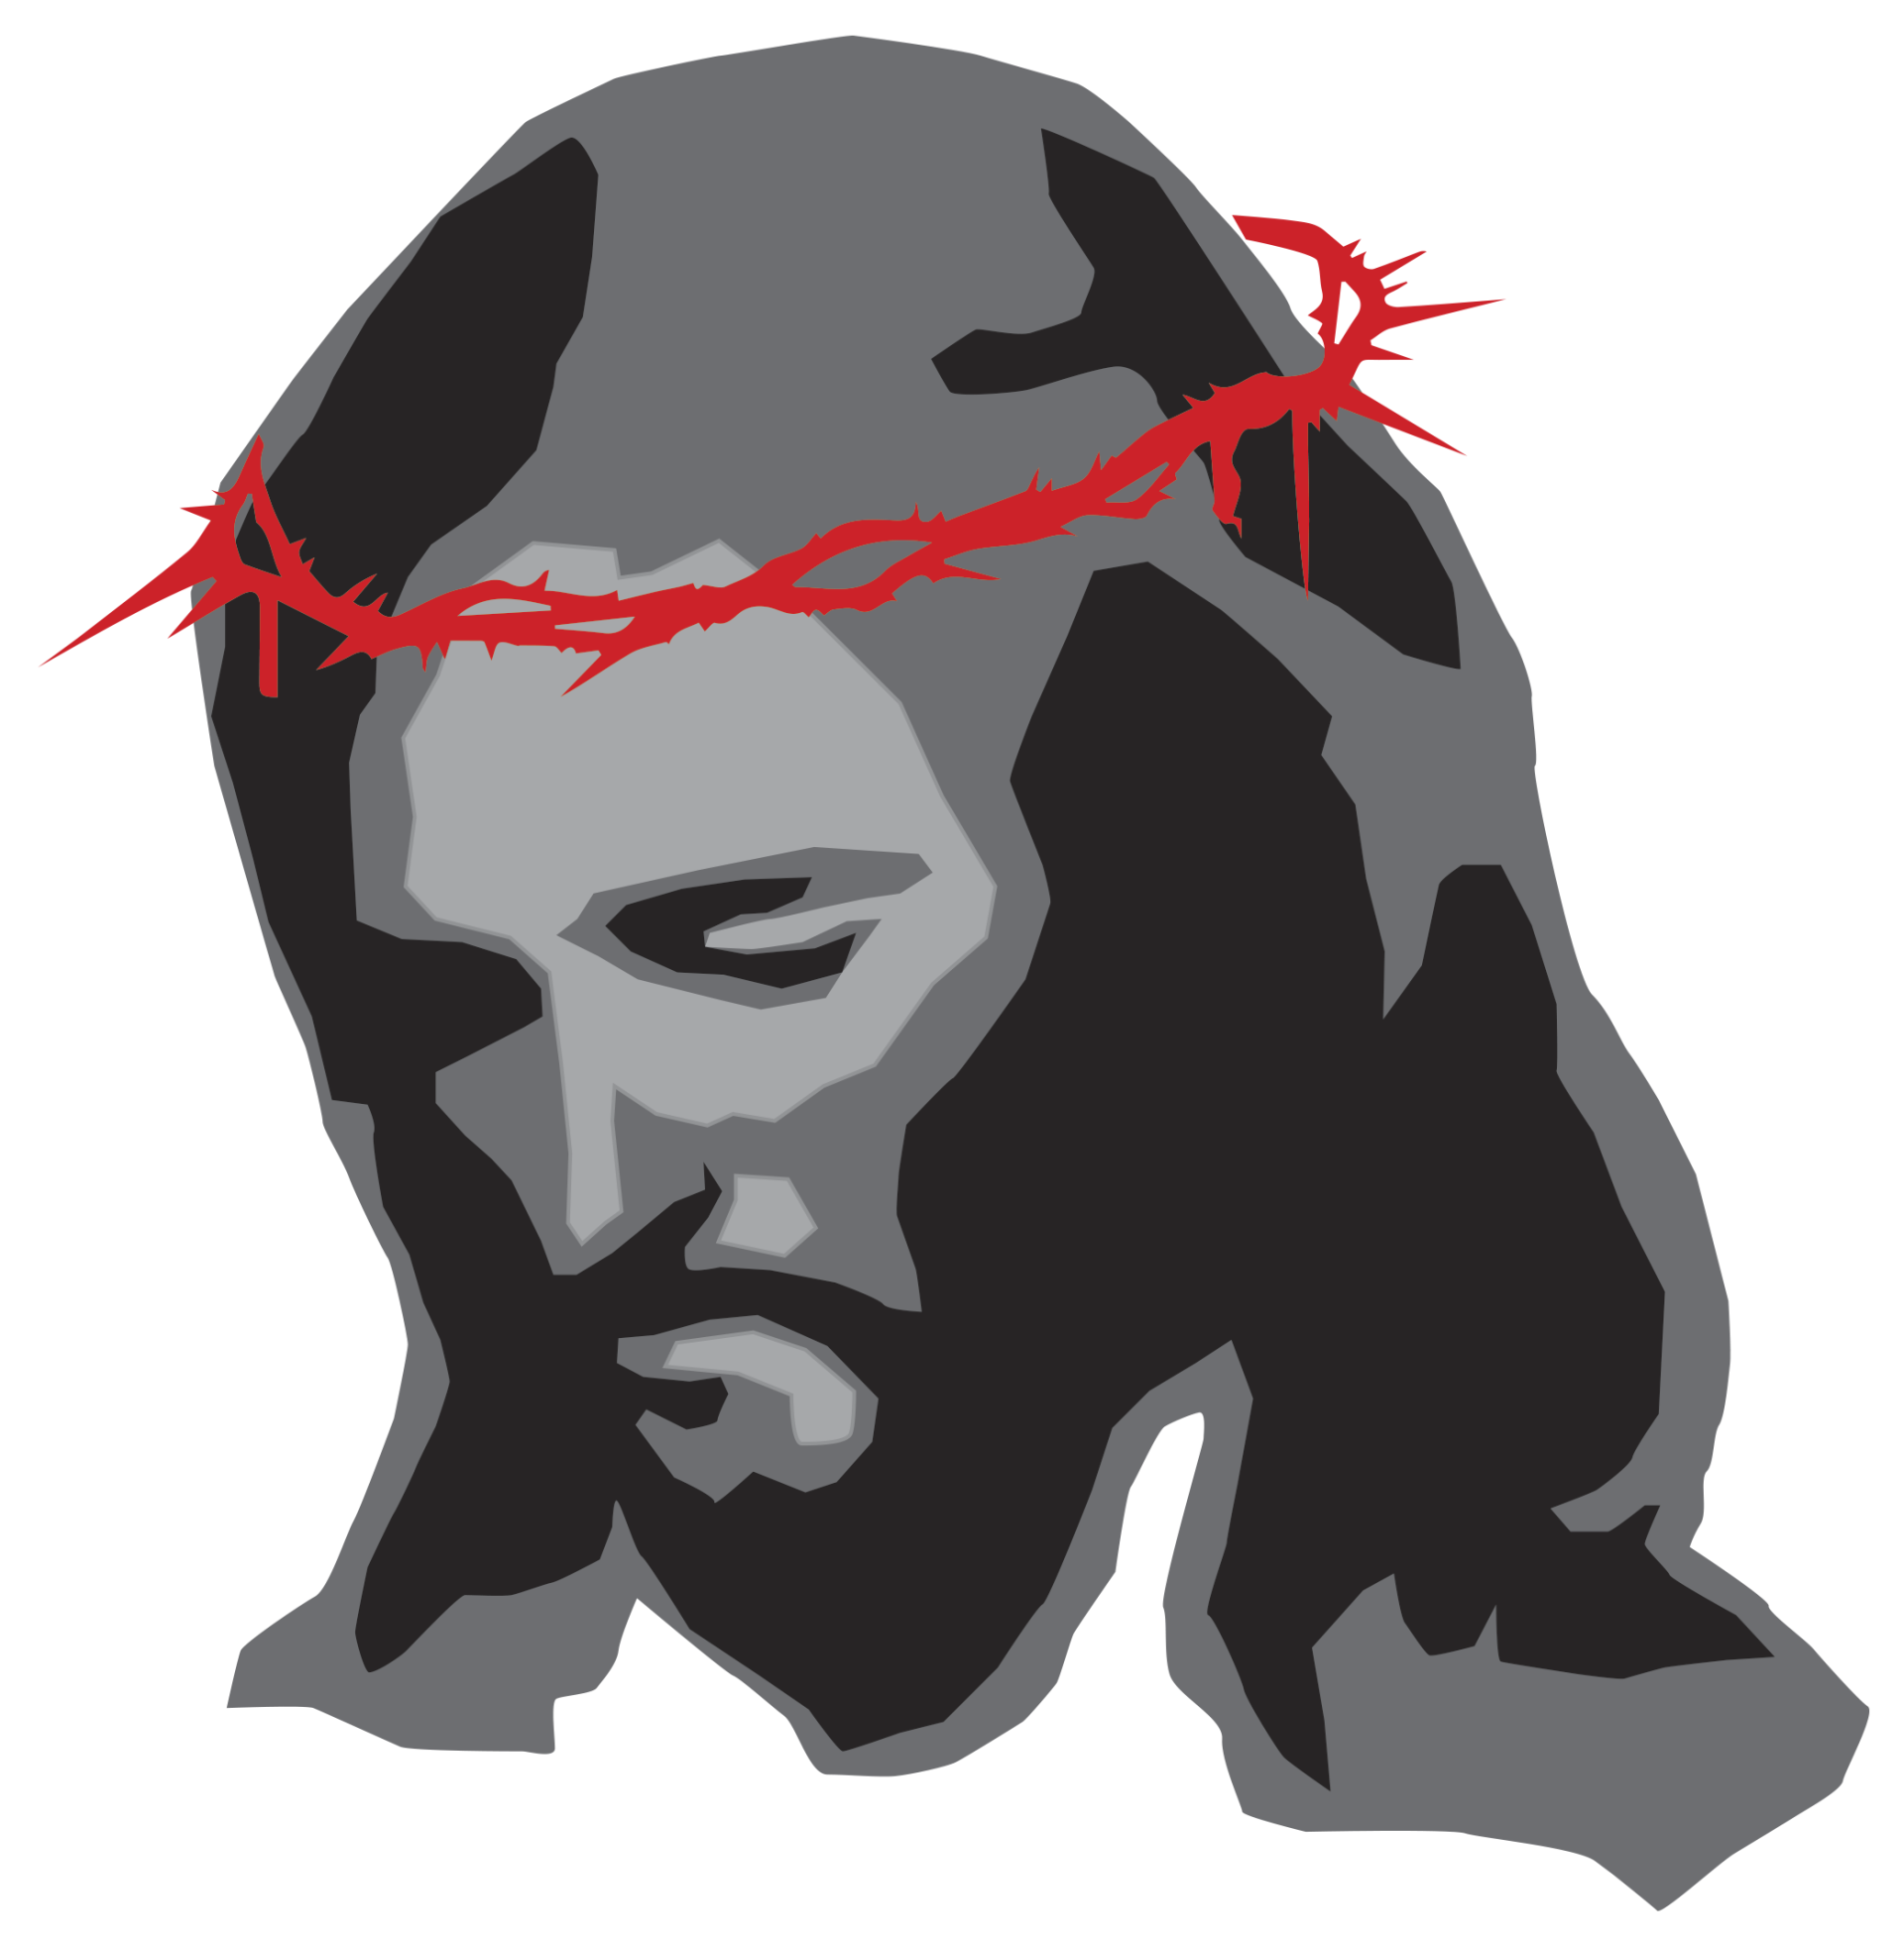 Harmaanmusta Jeesus-hahmo, jolla punainen orjantappurakruunu päässään